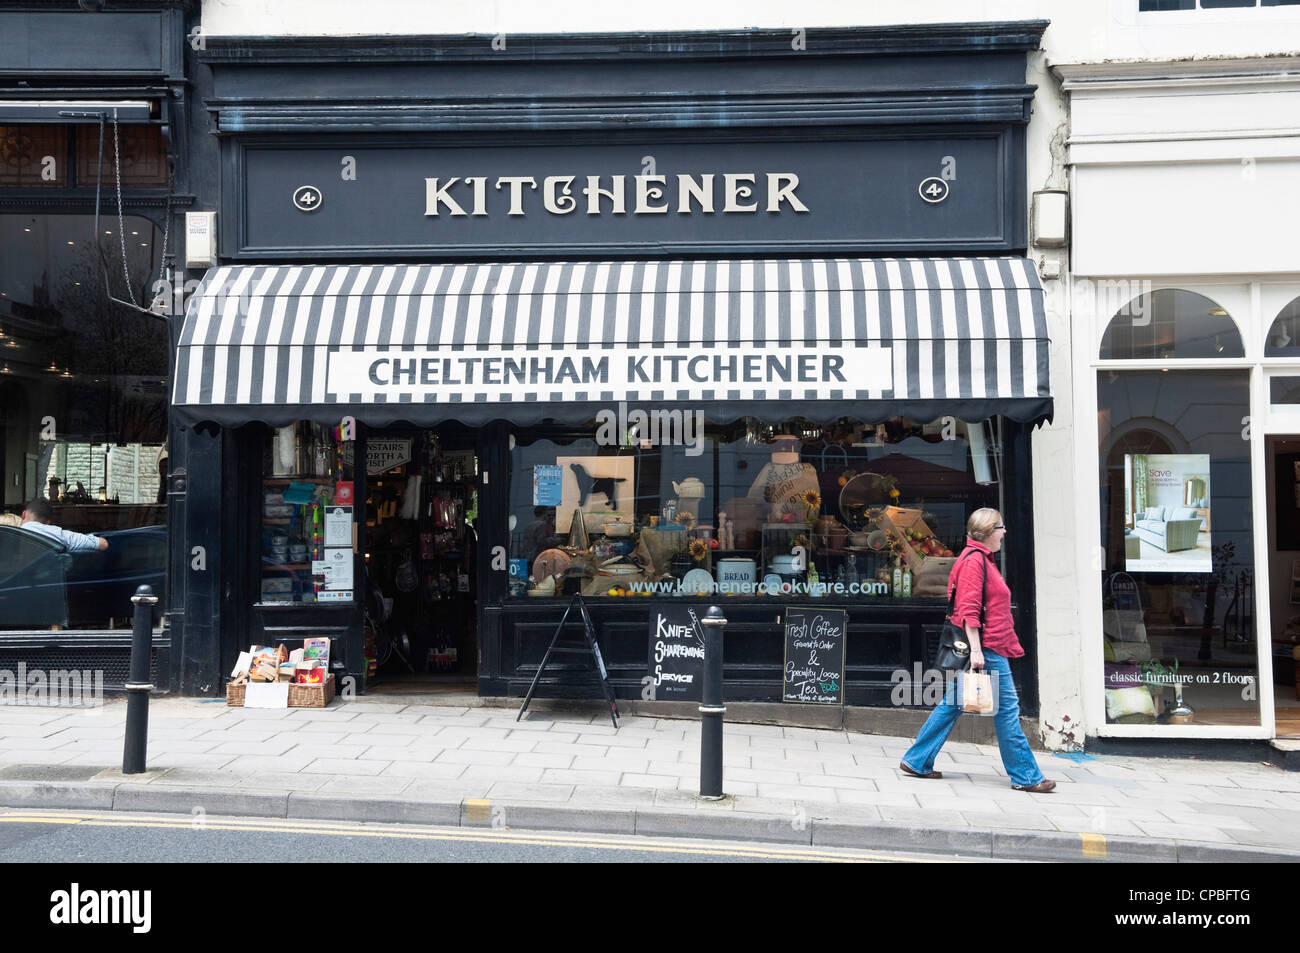 Cheltenham Kitchener - Ausrüstung Fachgeschäft Küche, befindet sich gegenüber dem Queens Hotel, Montpellier, Cheltenham, Vereinigtes Königreich. Stockfoto